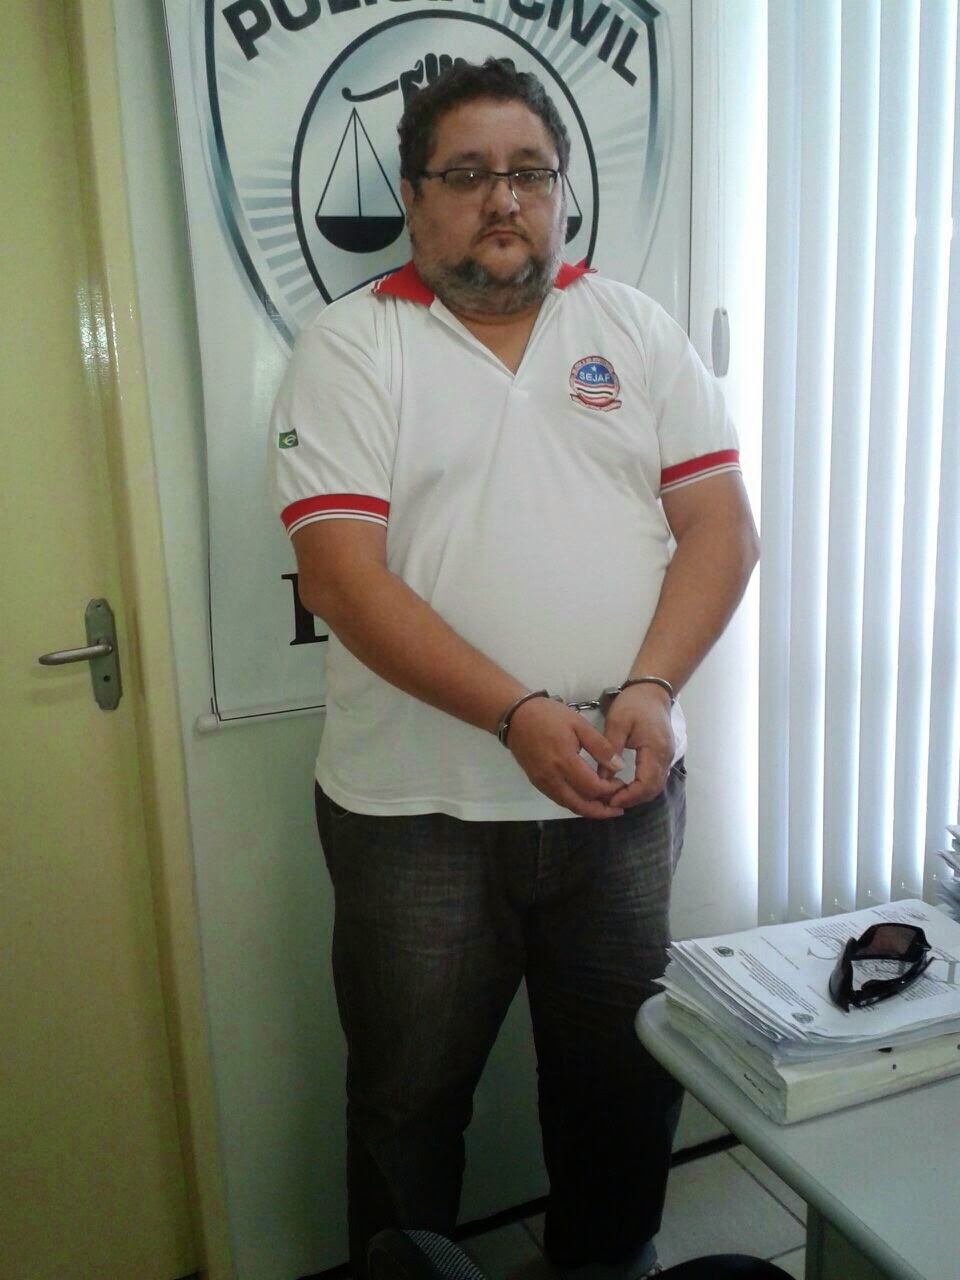 Suspeito de facilitar fuga de detentes, Cláudio Barcelos foi preso nesta segunda-feira (15), em São Luís, no Maranhão